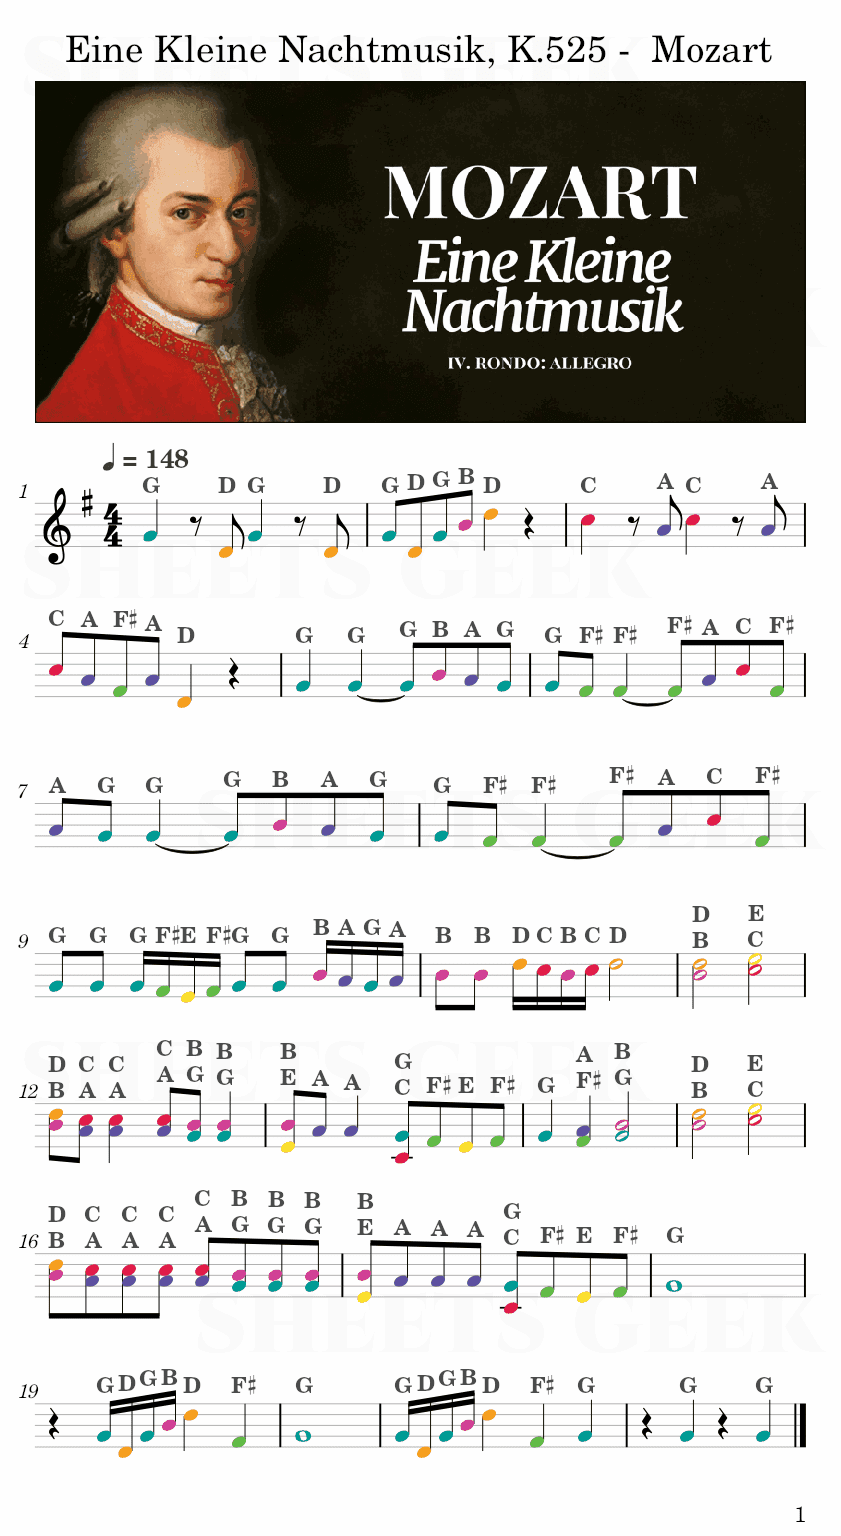 Eine Kleine Nachtmusik, K.525 - Mozart Easy Sheet Music Free for piano, keyboard, flute, violin, sax, cello page 1